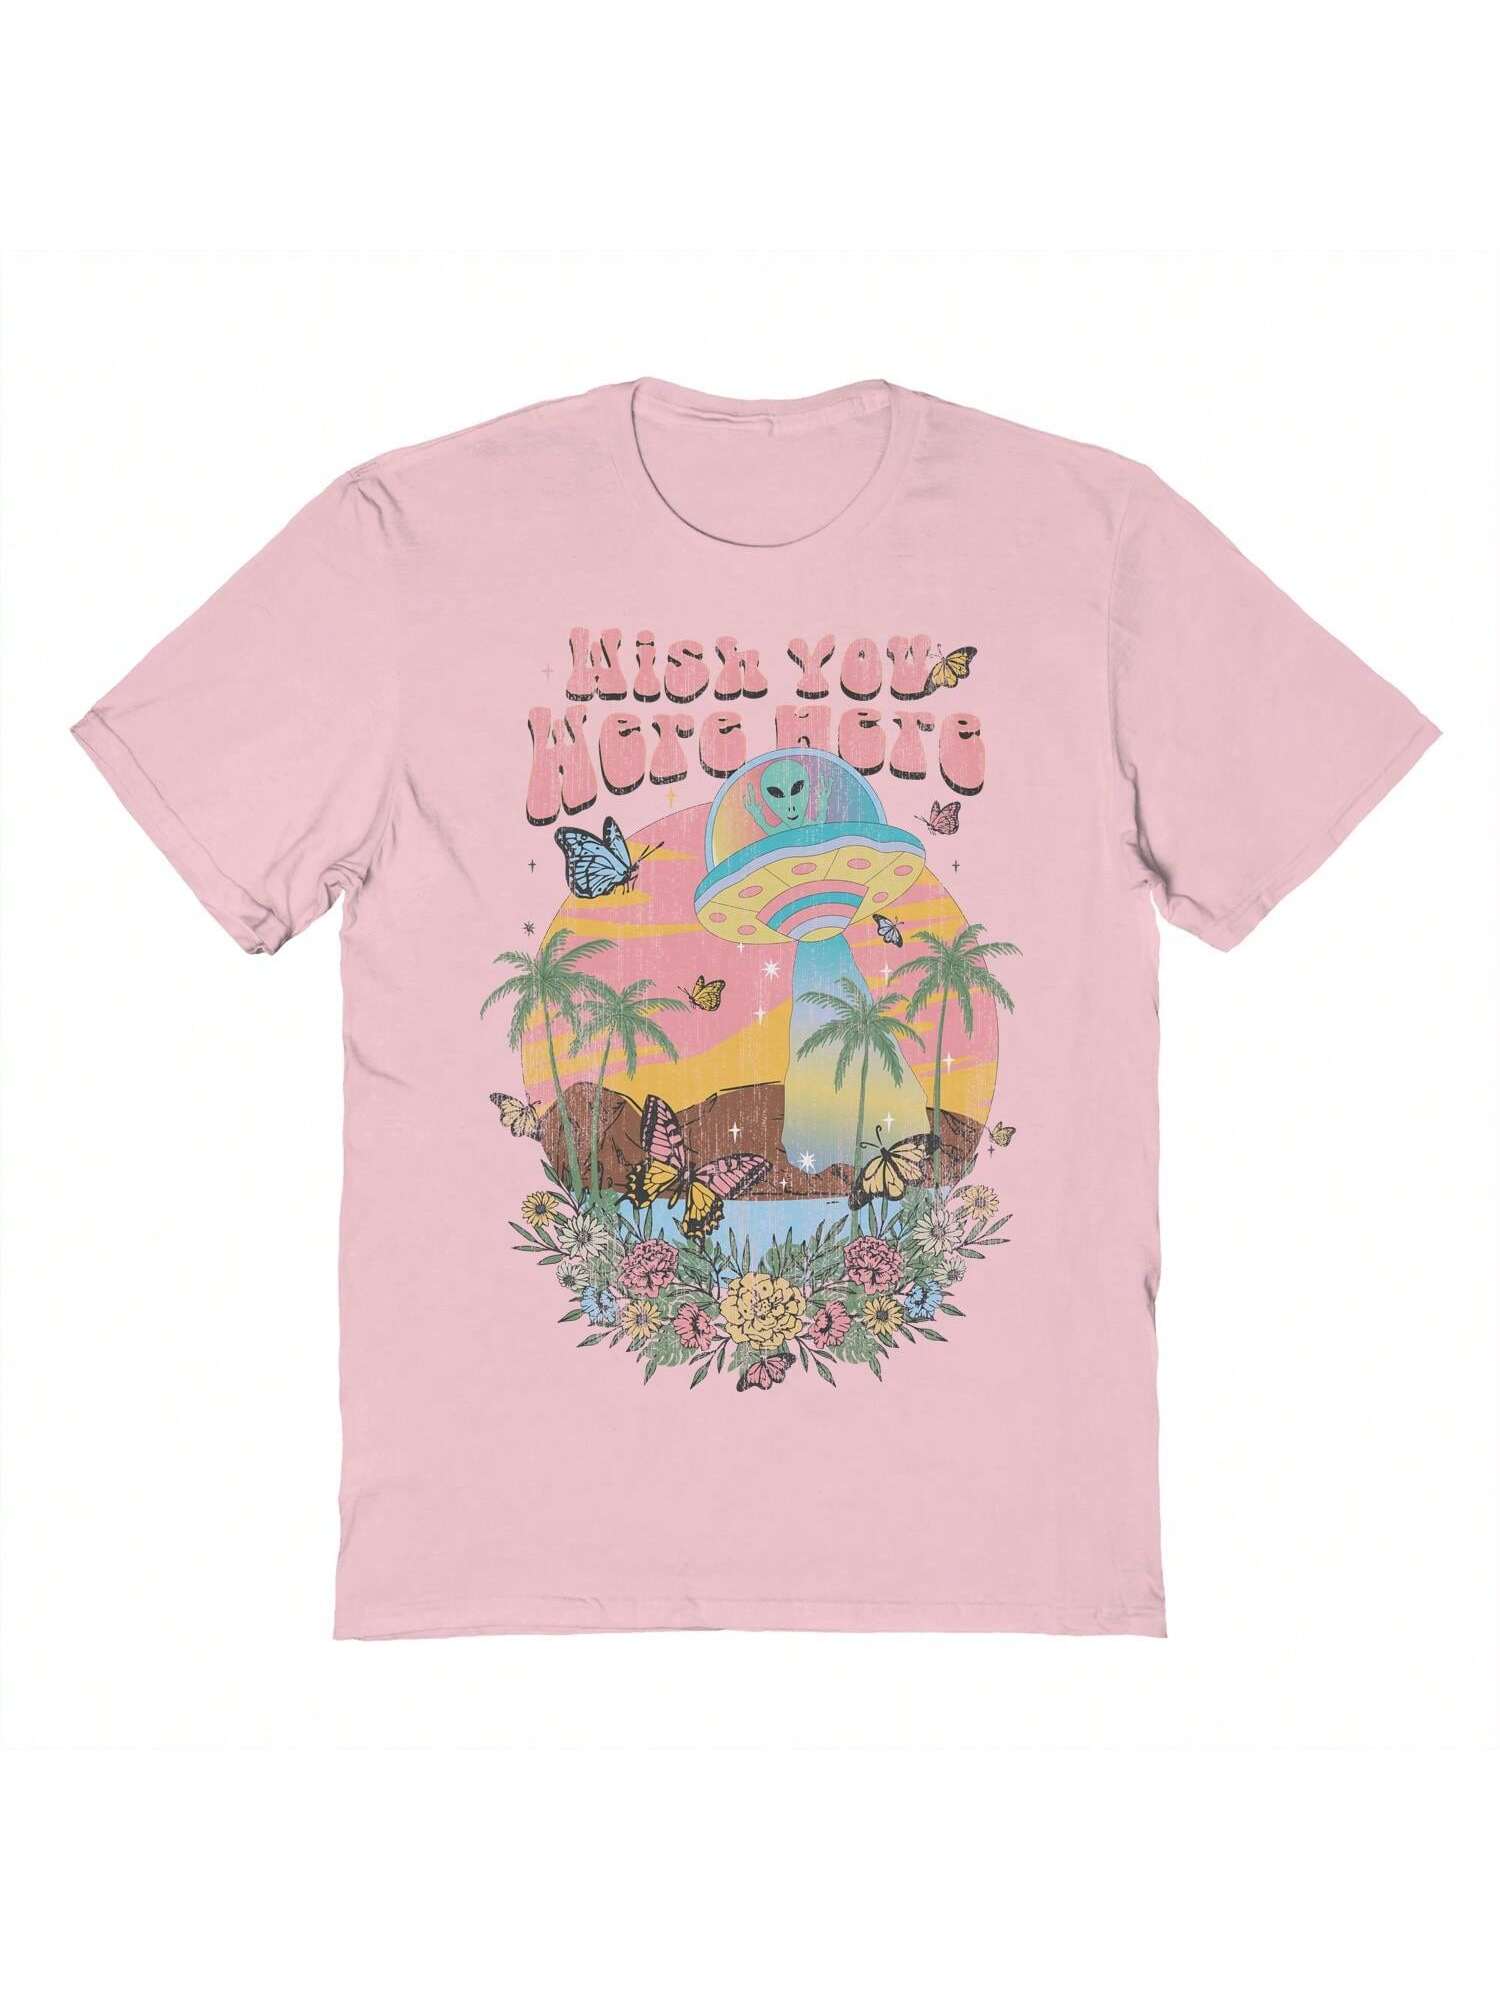 Хлопковая футболка унисекс с короткими рукавами с графическим рисунком «Почти там хотелось бы, розовый если бы ты был здесь пиколт дж